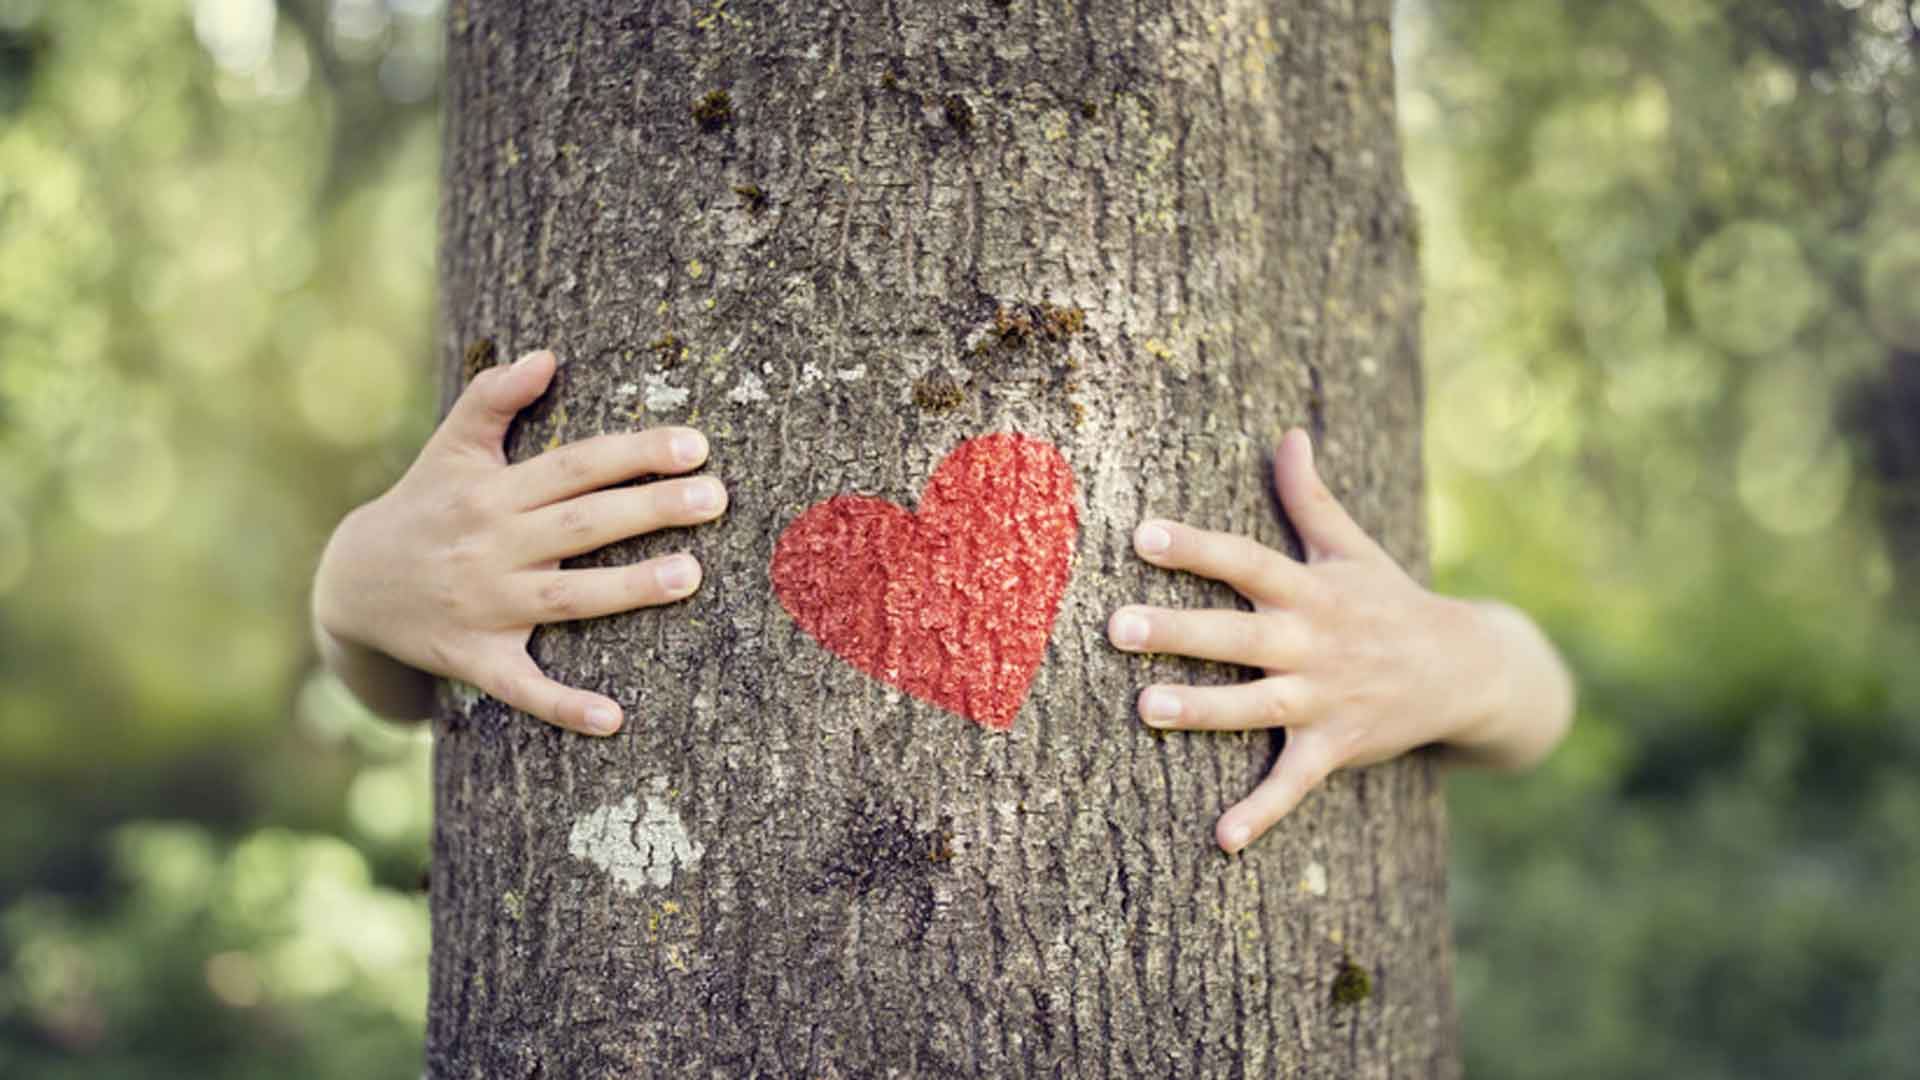 Kind umarmt Baum mit Herz auf dem Stamm